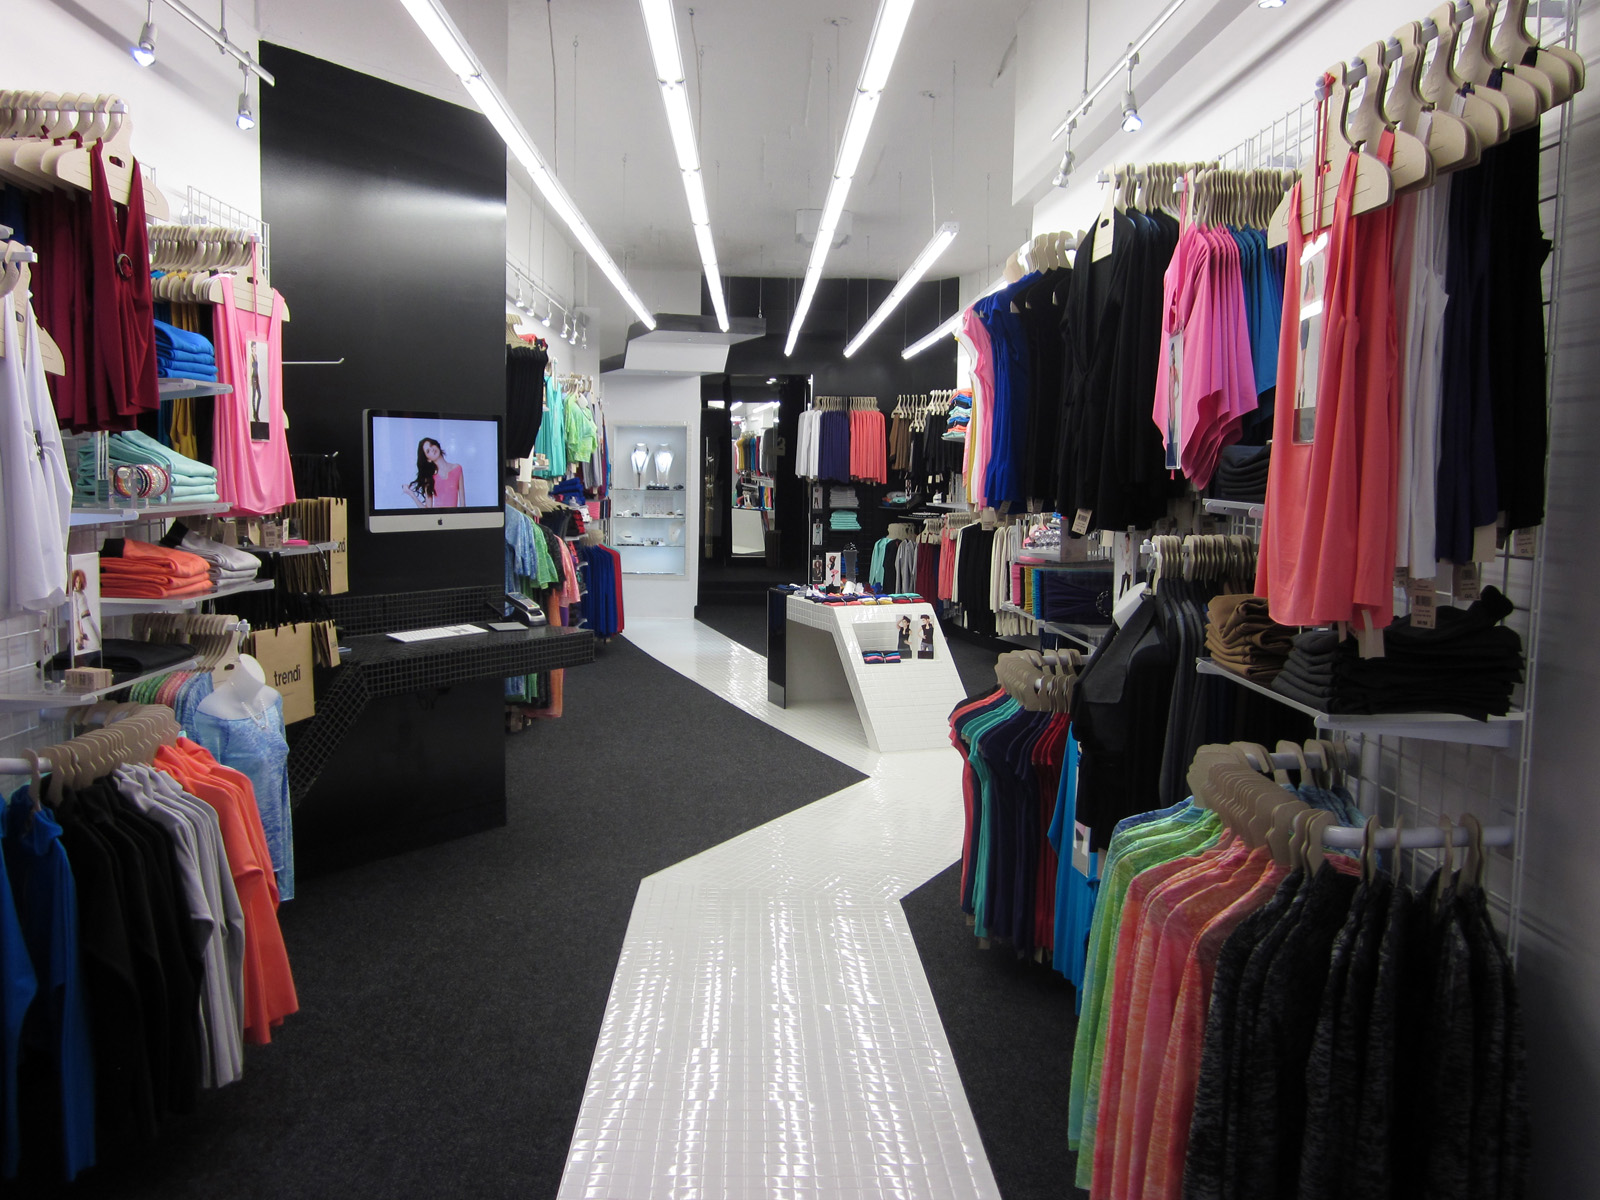 My small shop. Магазин одежды. Торговый центр одежда. Торговые центры женской одежды. Магазин одежды в торговом центре.